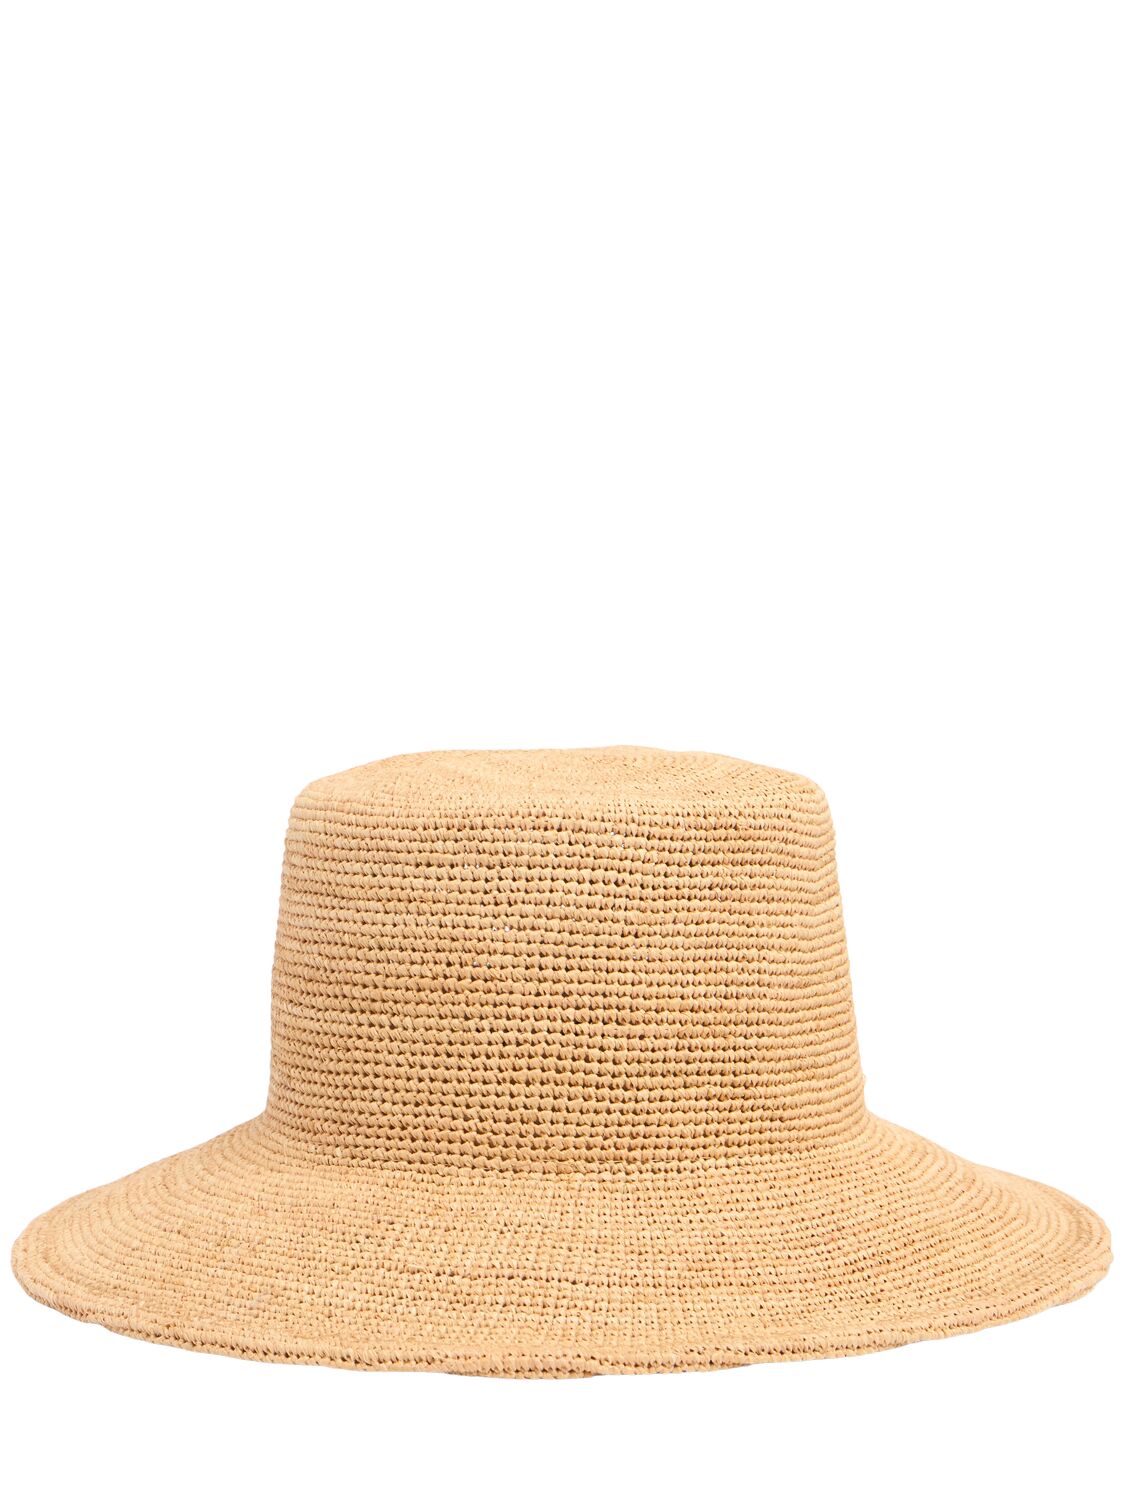 The Inca Wide Bucket Hat